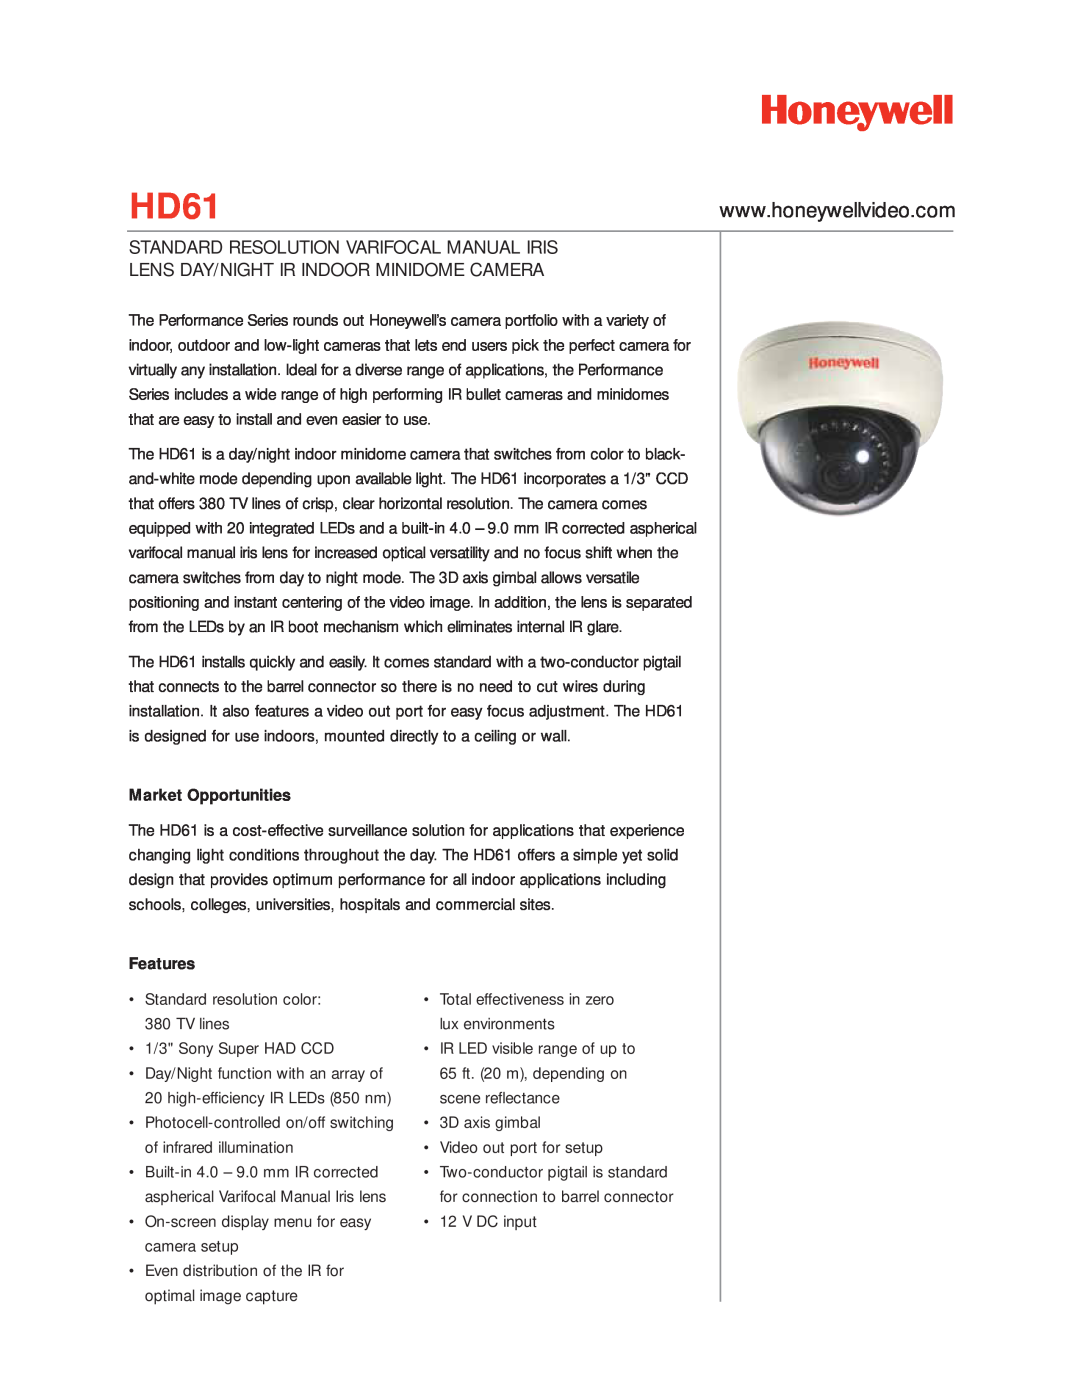 Honeywell HD61 manual Market Opportunities, Features, Standard Resolution Varifocal Manual Iris 